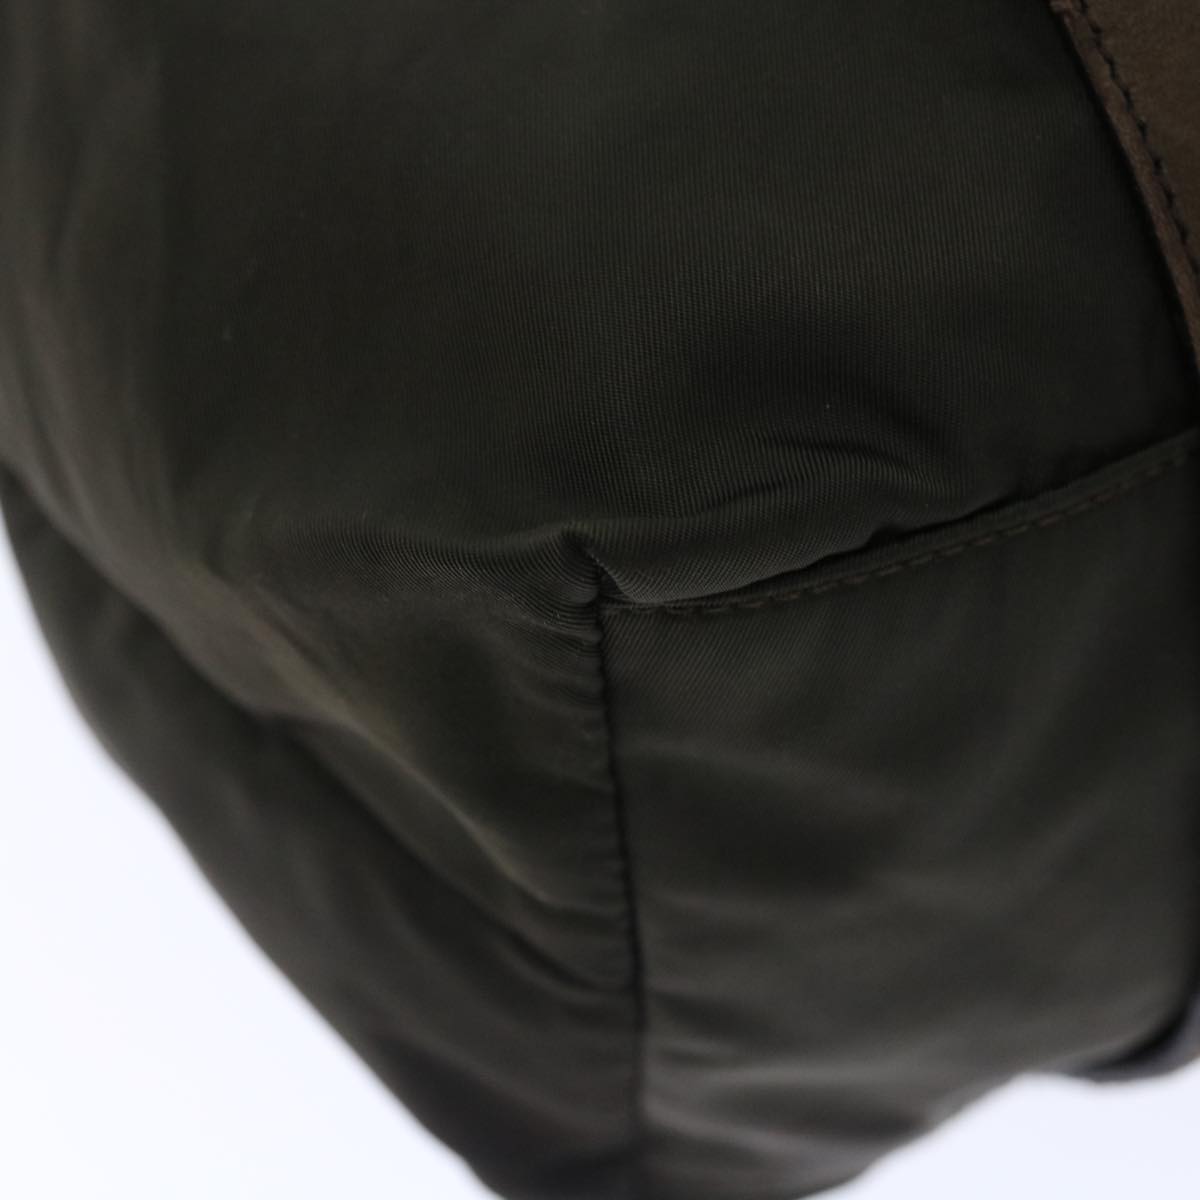 PRADA Shoulder Bag Nylon Khaki Auth ac2867